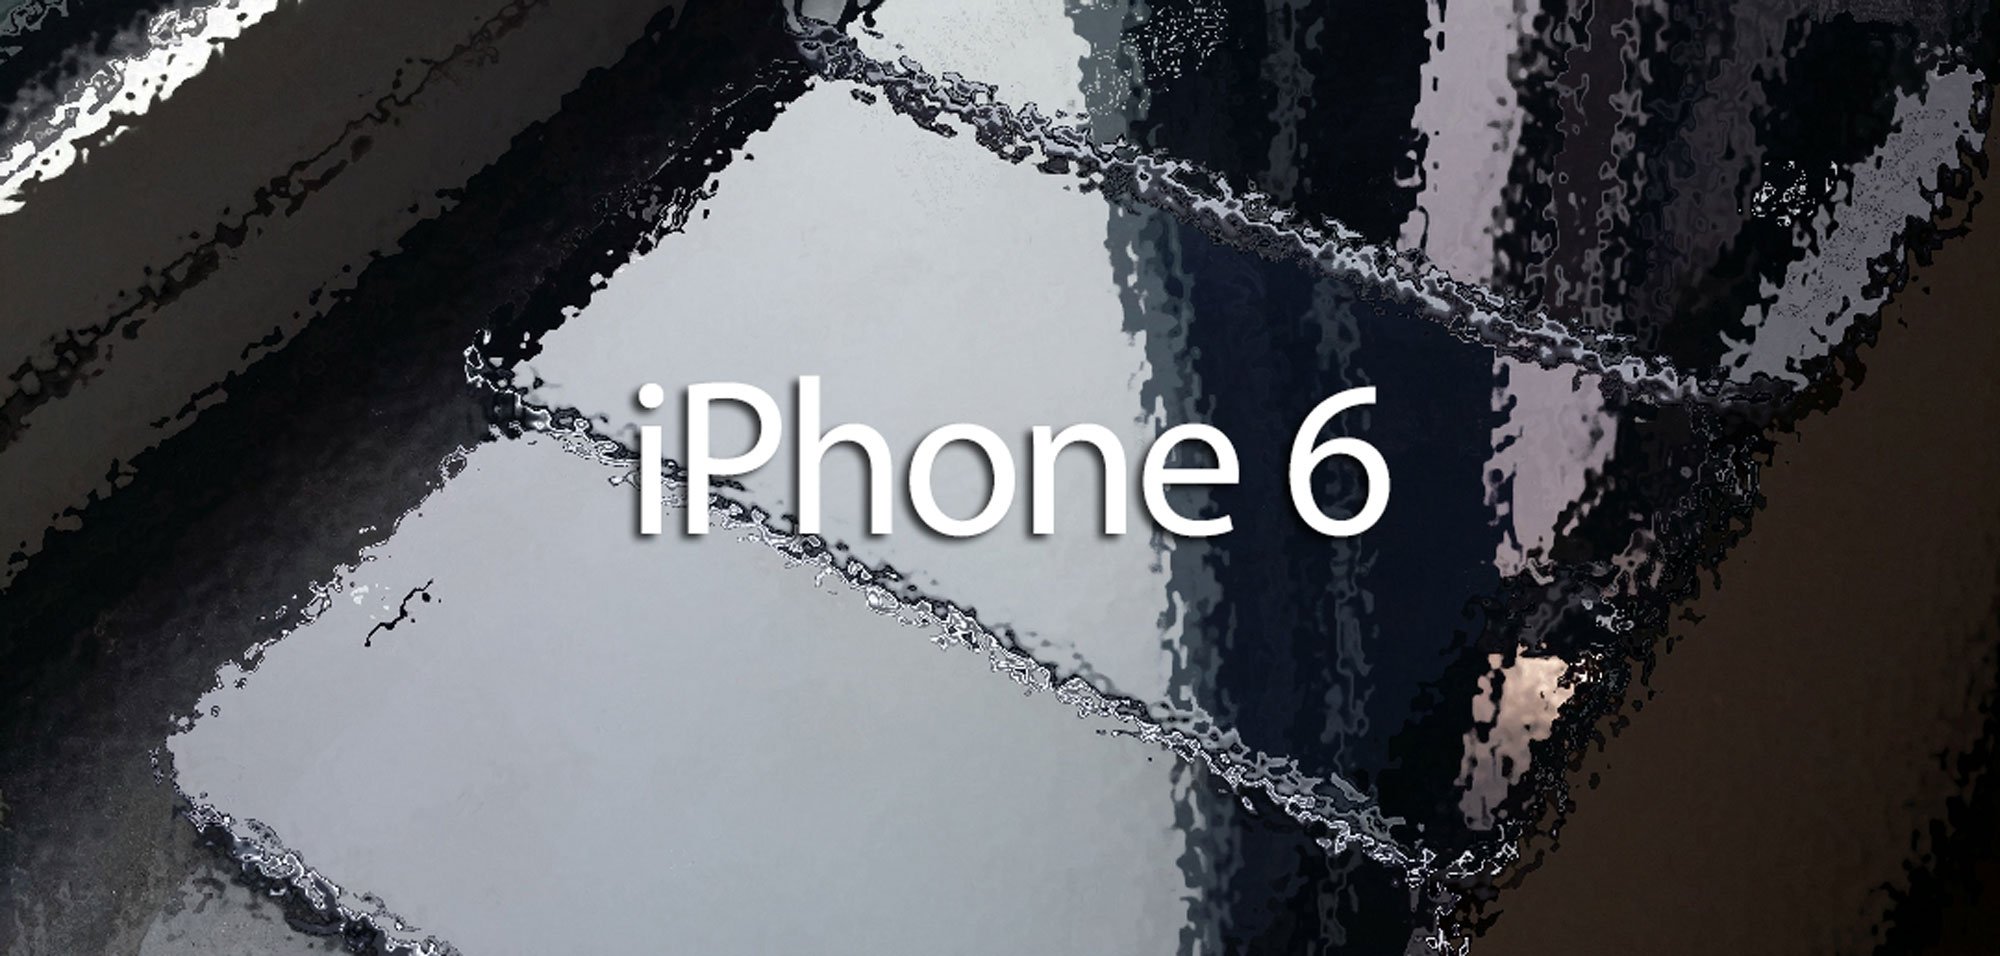 128 GB iPhone, iPhone 6 günstiger als iPhone 5s? 2